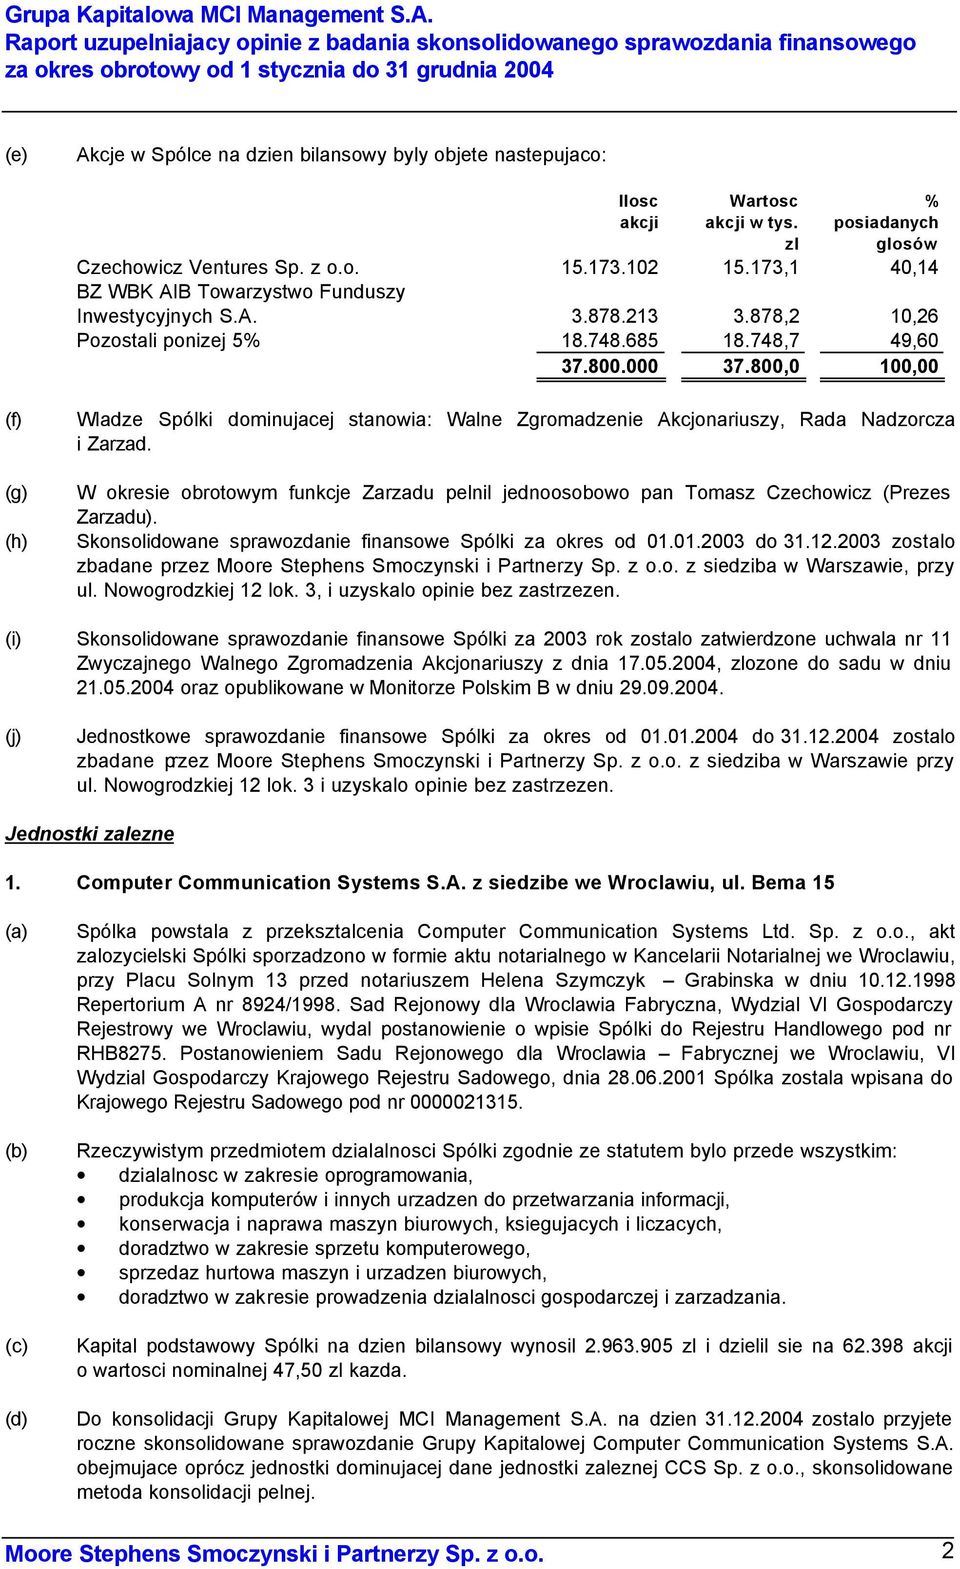 akcji Wartosc akcji w tys. zl % posiadanych glosów Czechowicz Ventures Sp. z o.o. 15.173.102 15.173,1 40,14 BZ WBK AIB Towarzystwo Funduszy Inwestycyjnych S.A. 3.878.213 3.